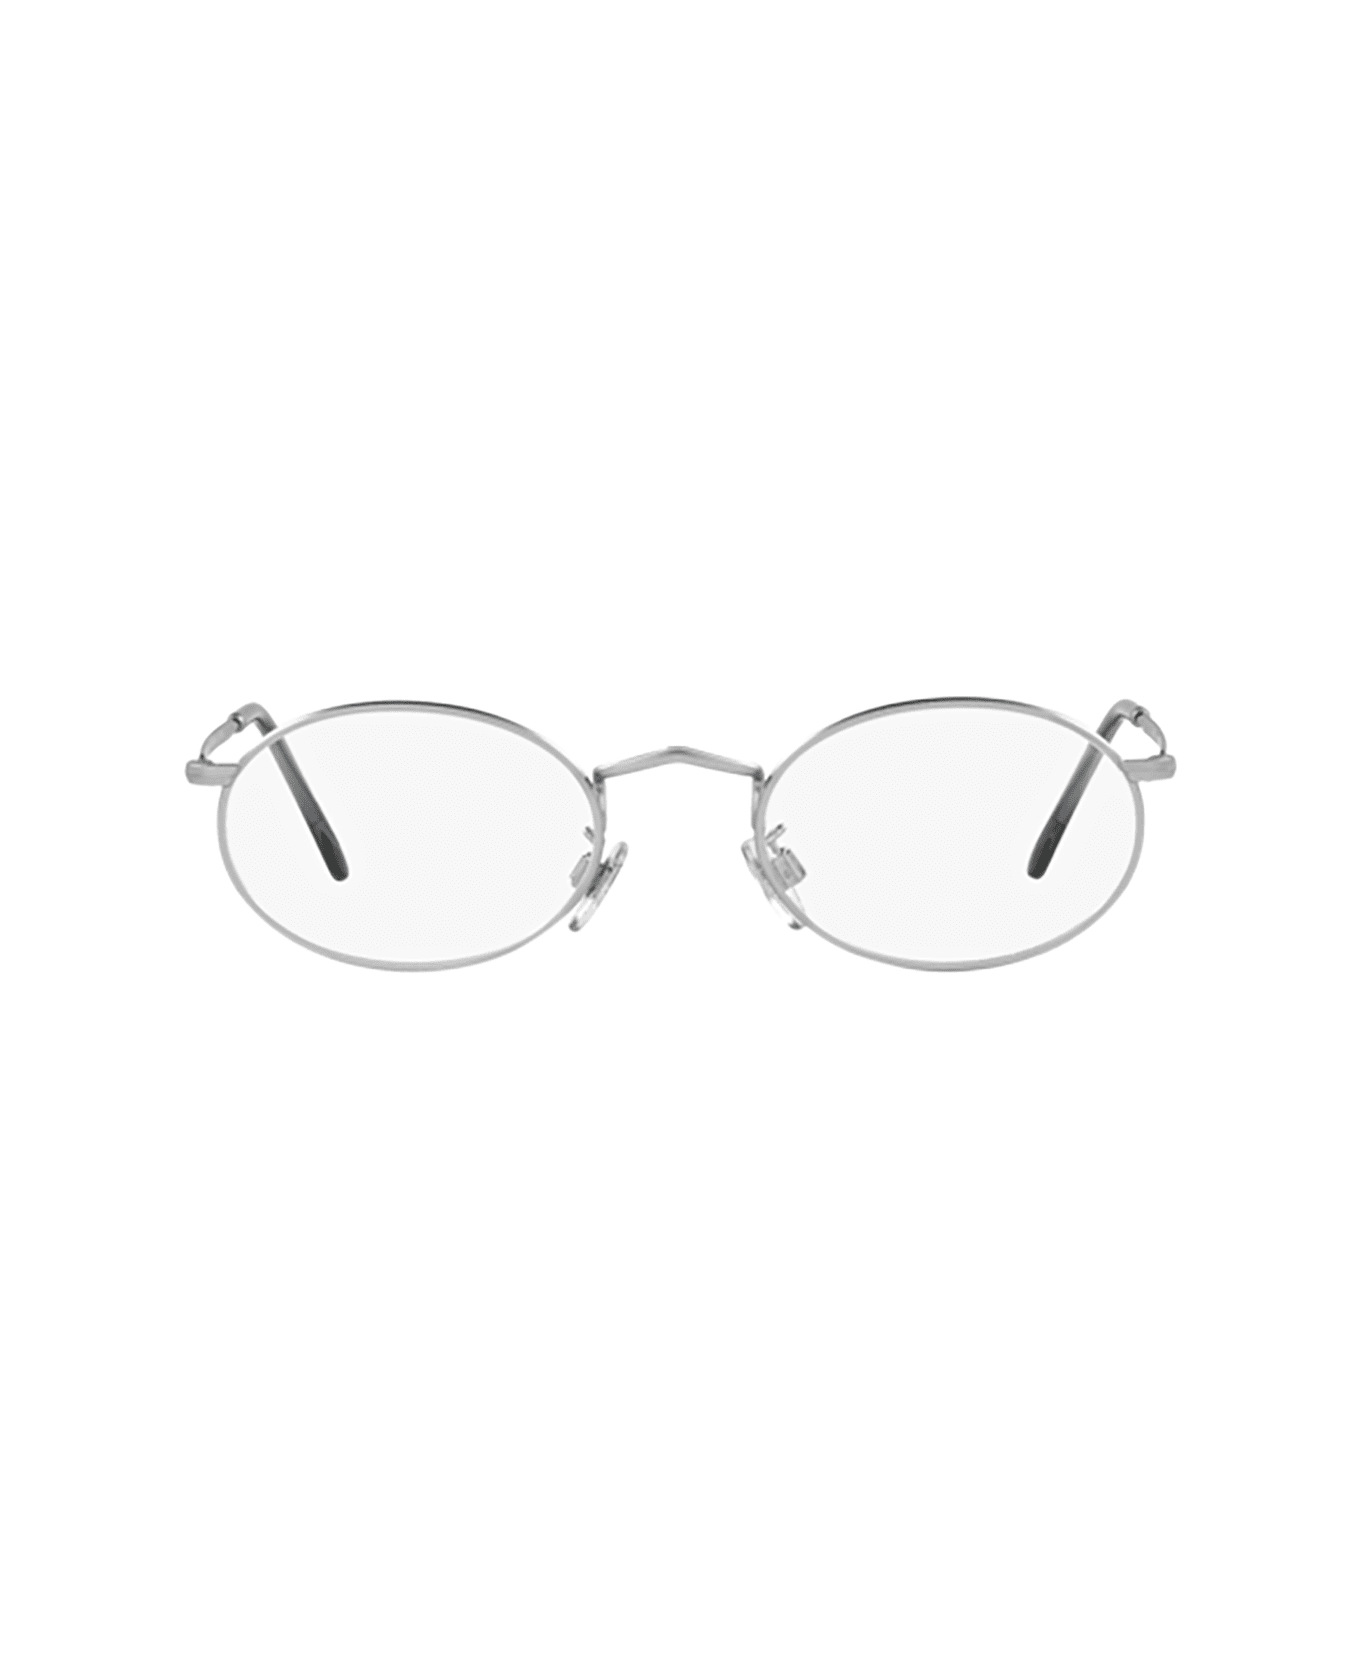 Giorgio Armani Ar 131vm Matte Silver Glasses - Matte Silver